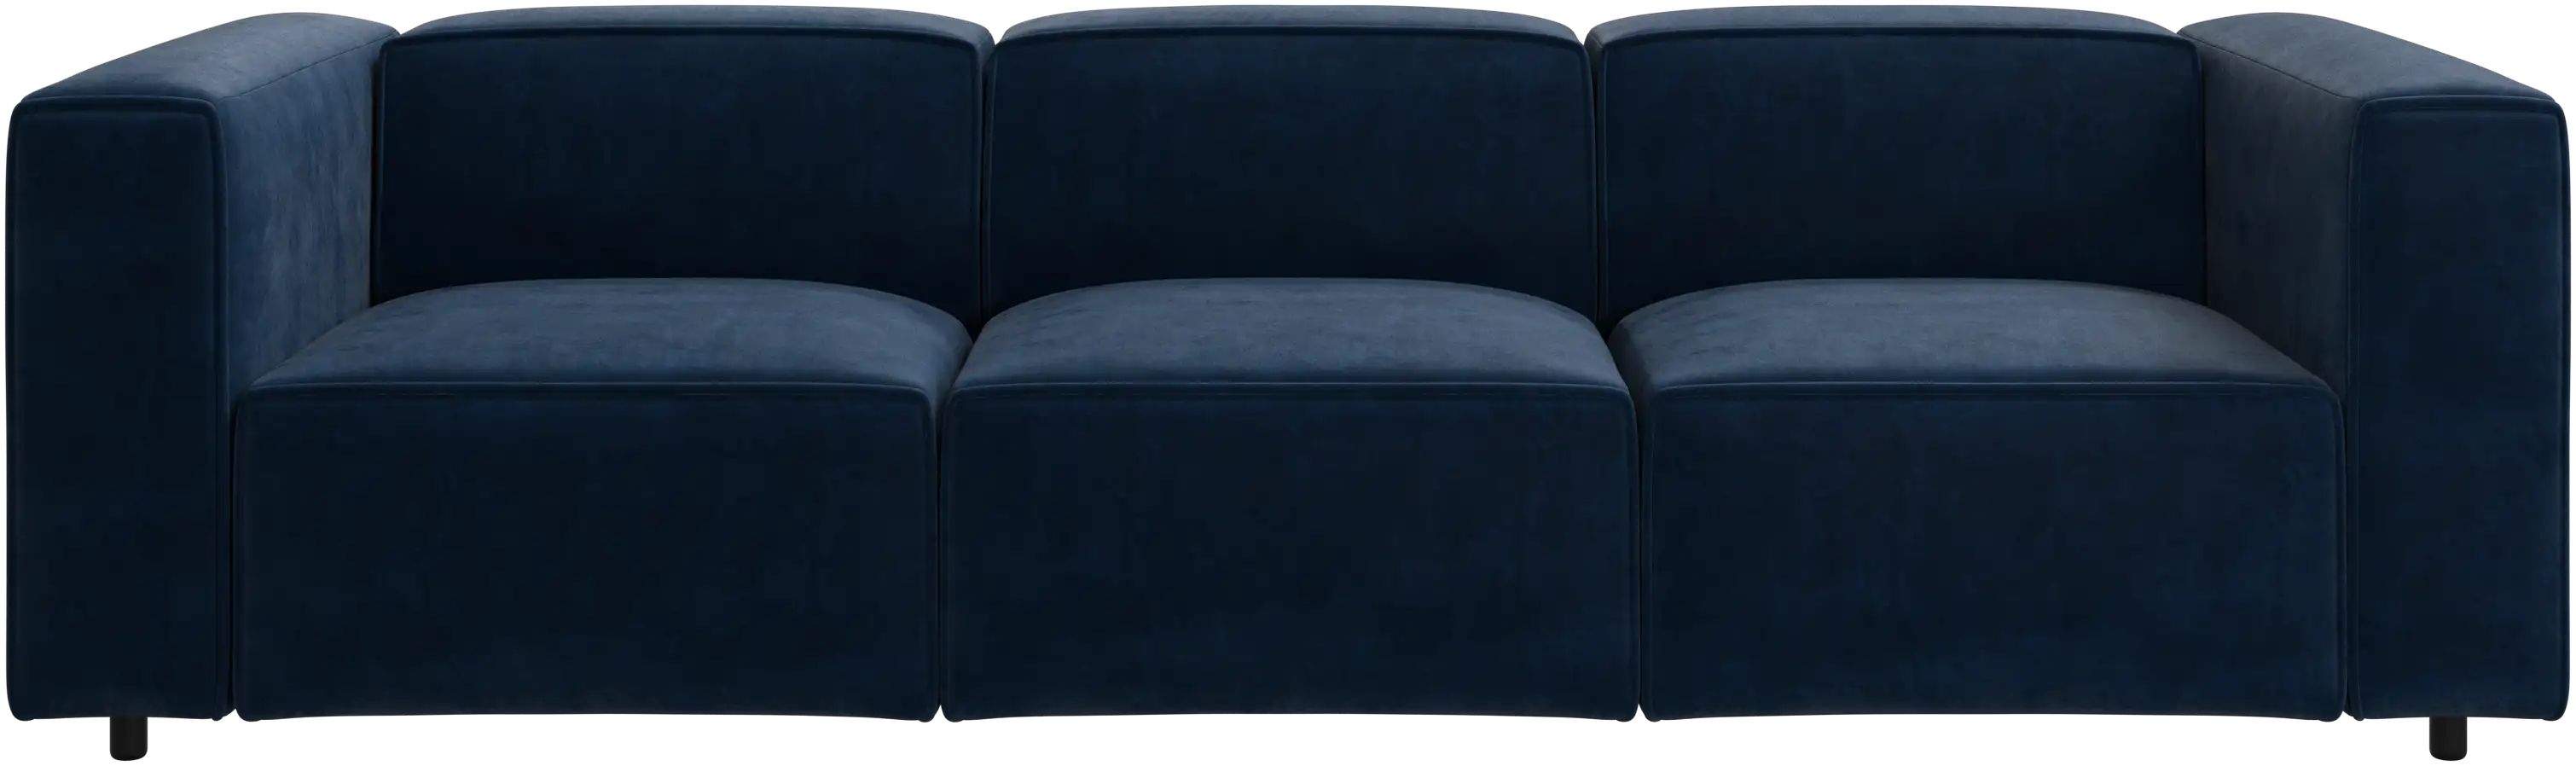 Carmo sofa